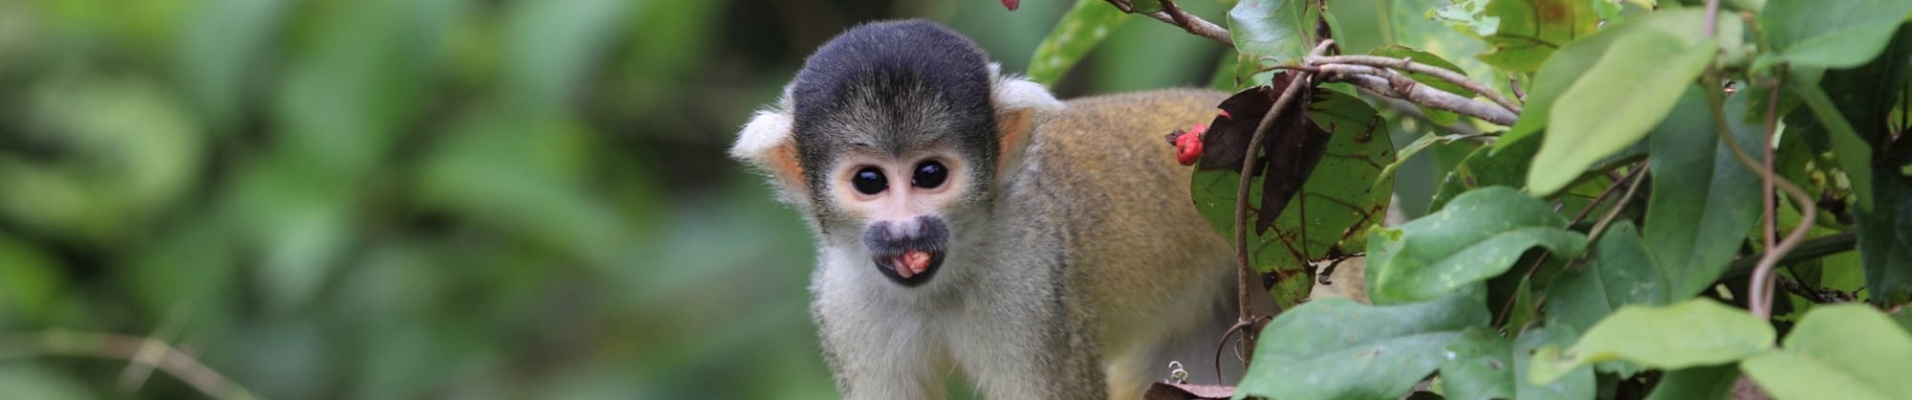 Petit singe en Amazonie bolivienne